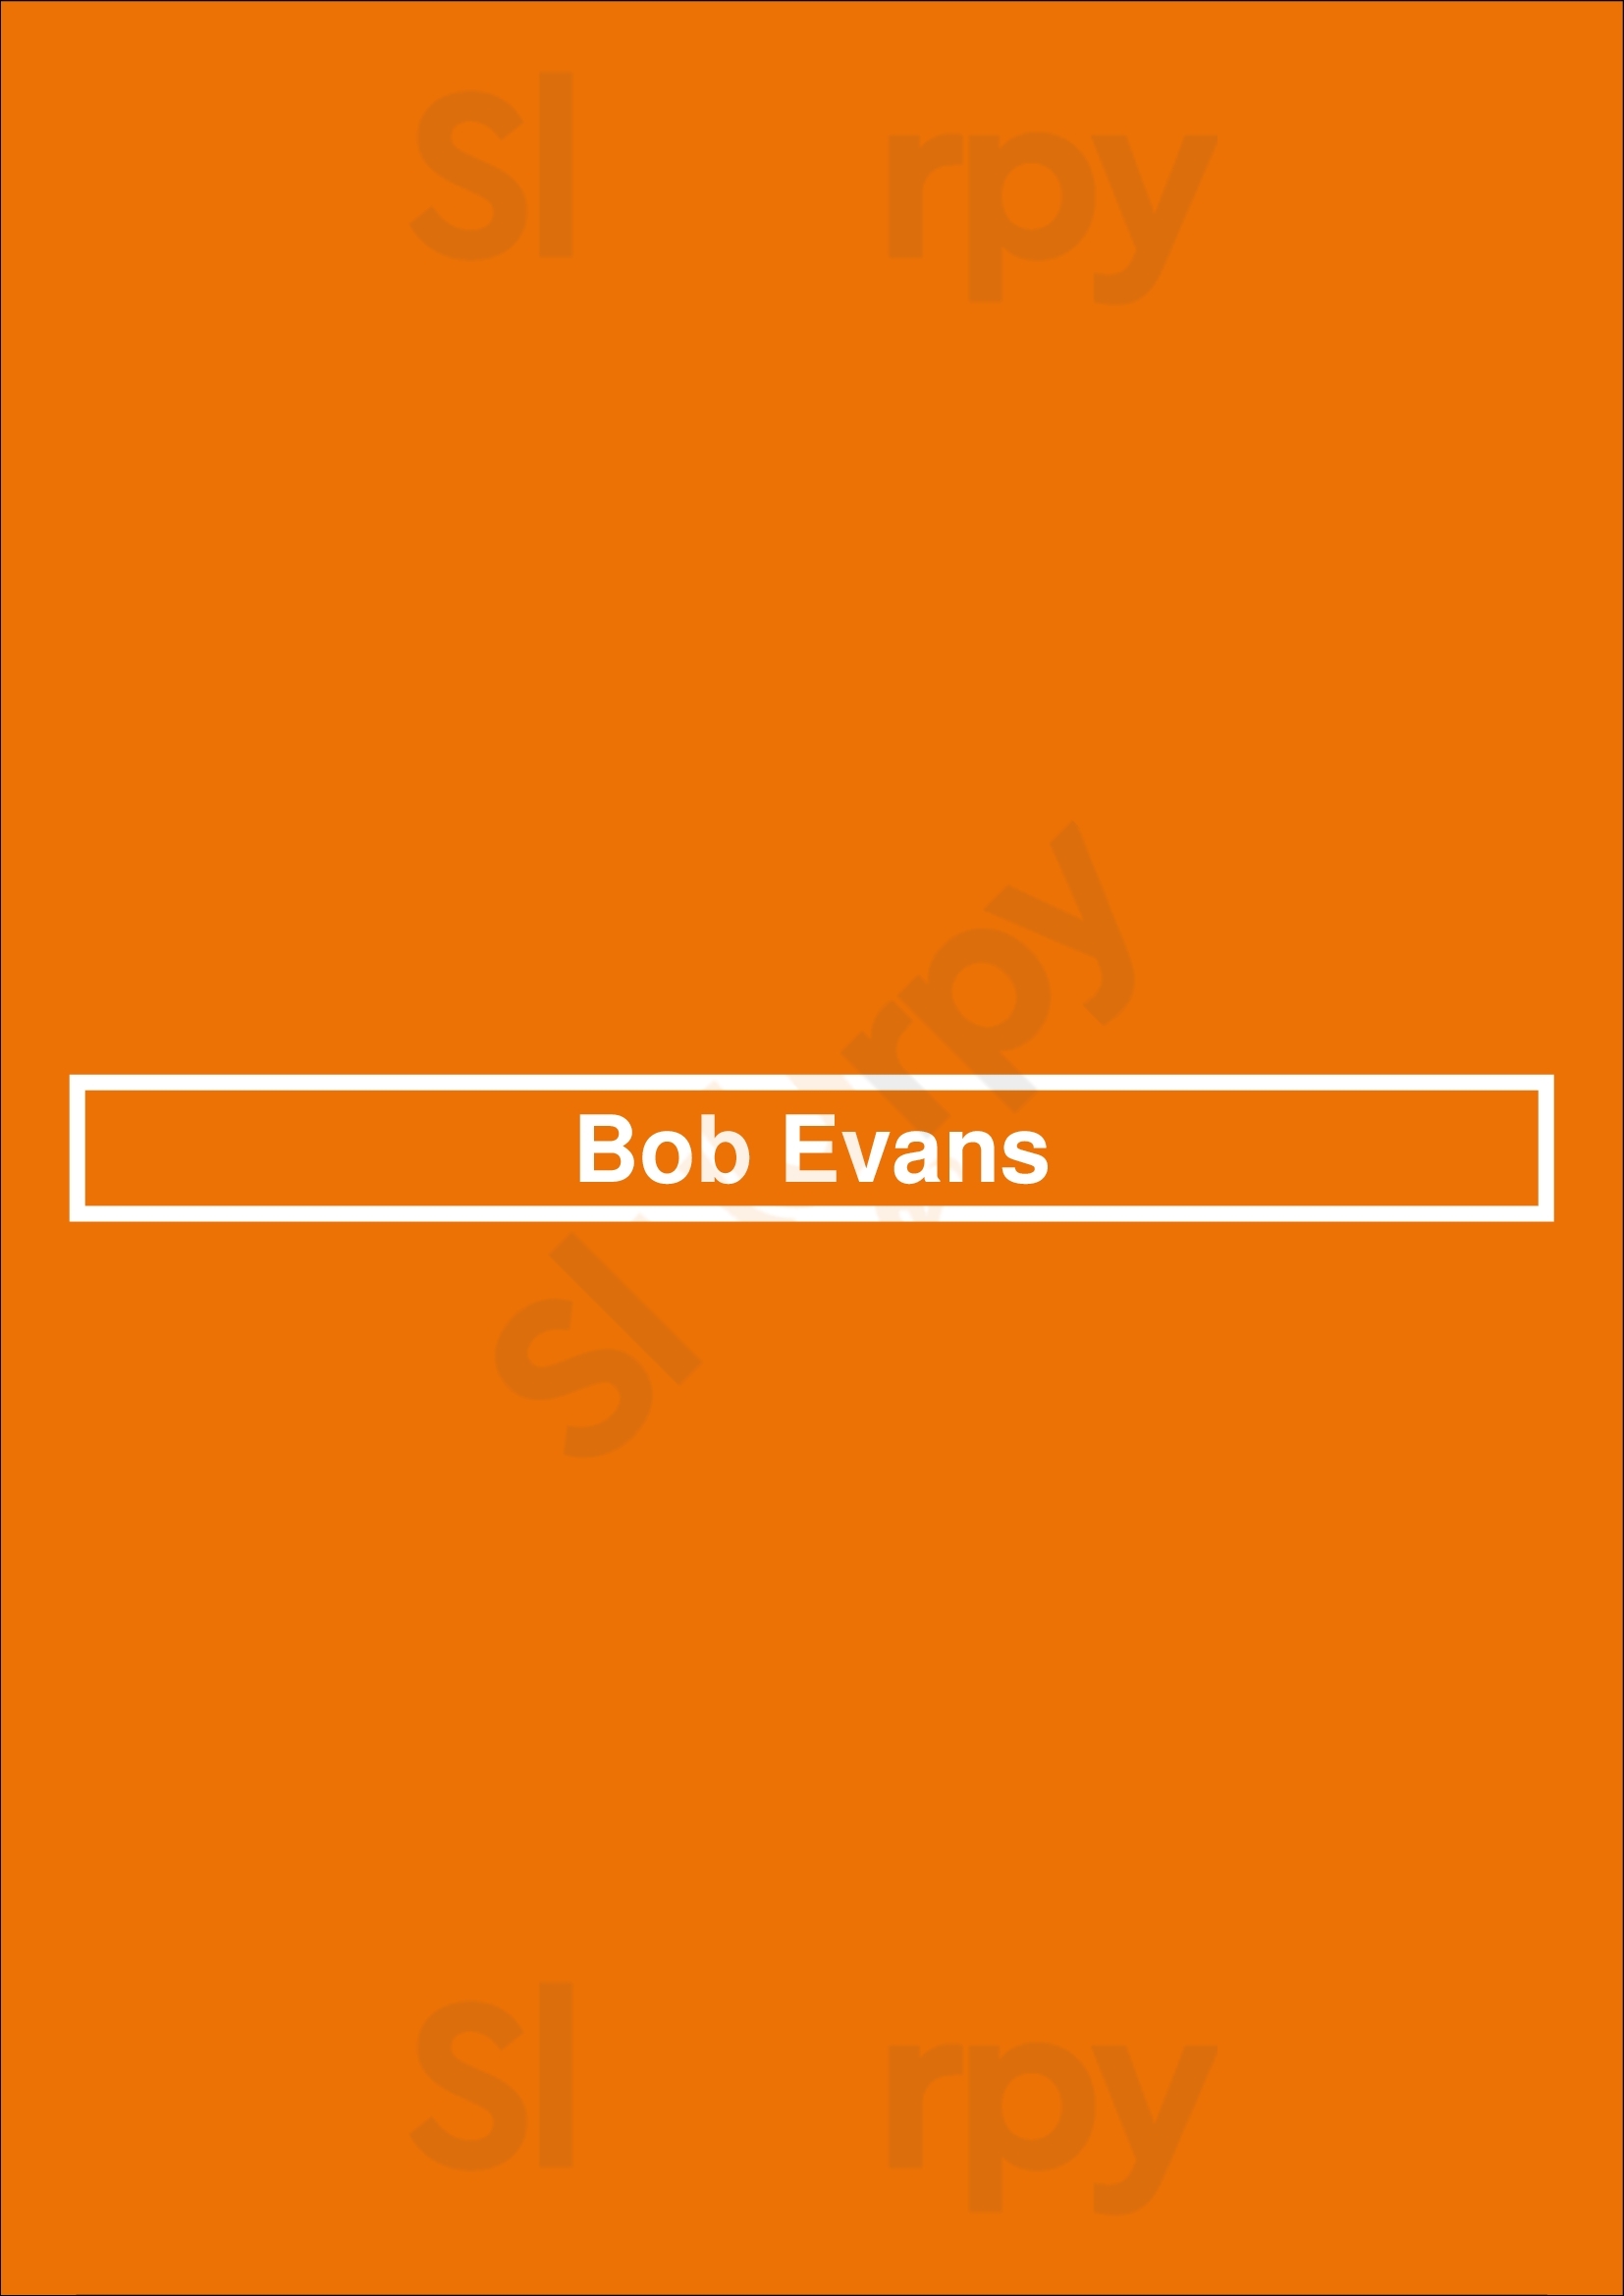 Bob Evans Pittsburgh Menu - 1